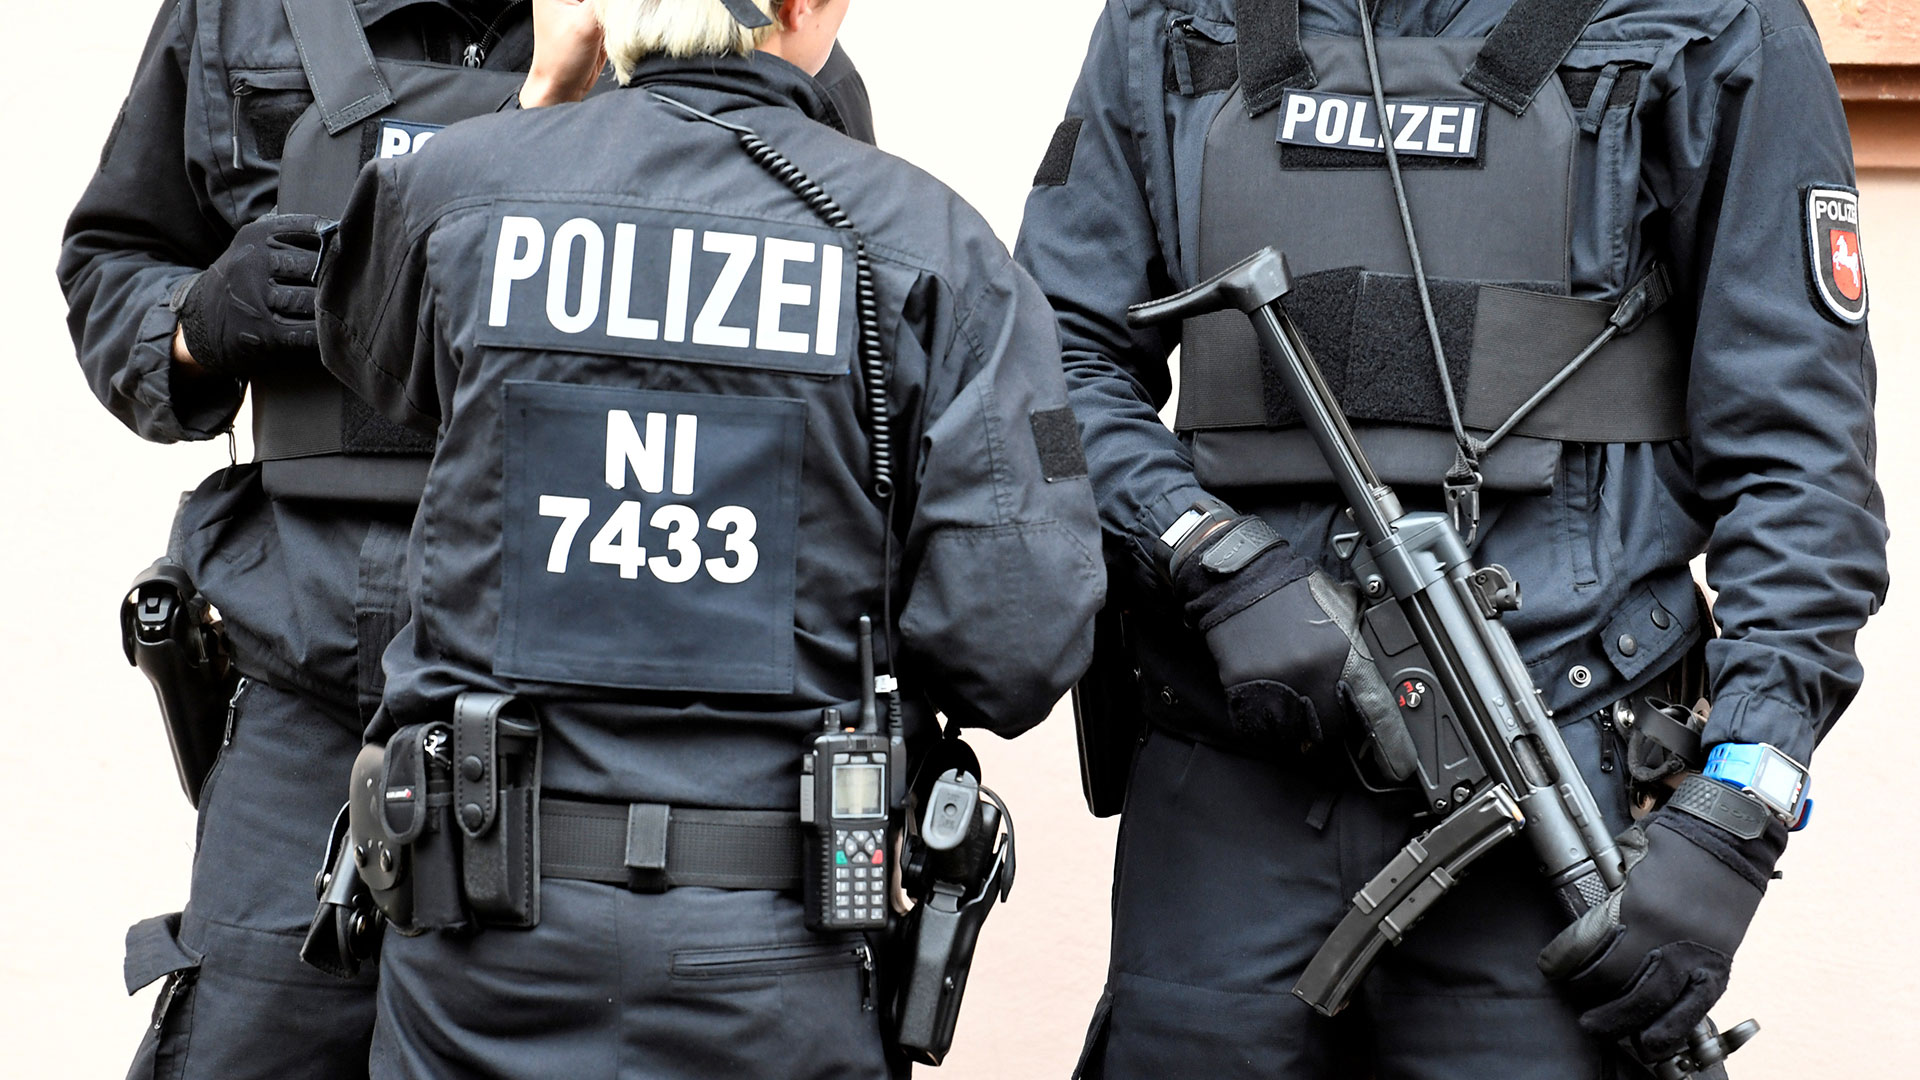 La Policía alemana detiene al presunto violador de una niña tras difundir fotos de la víctima